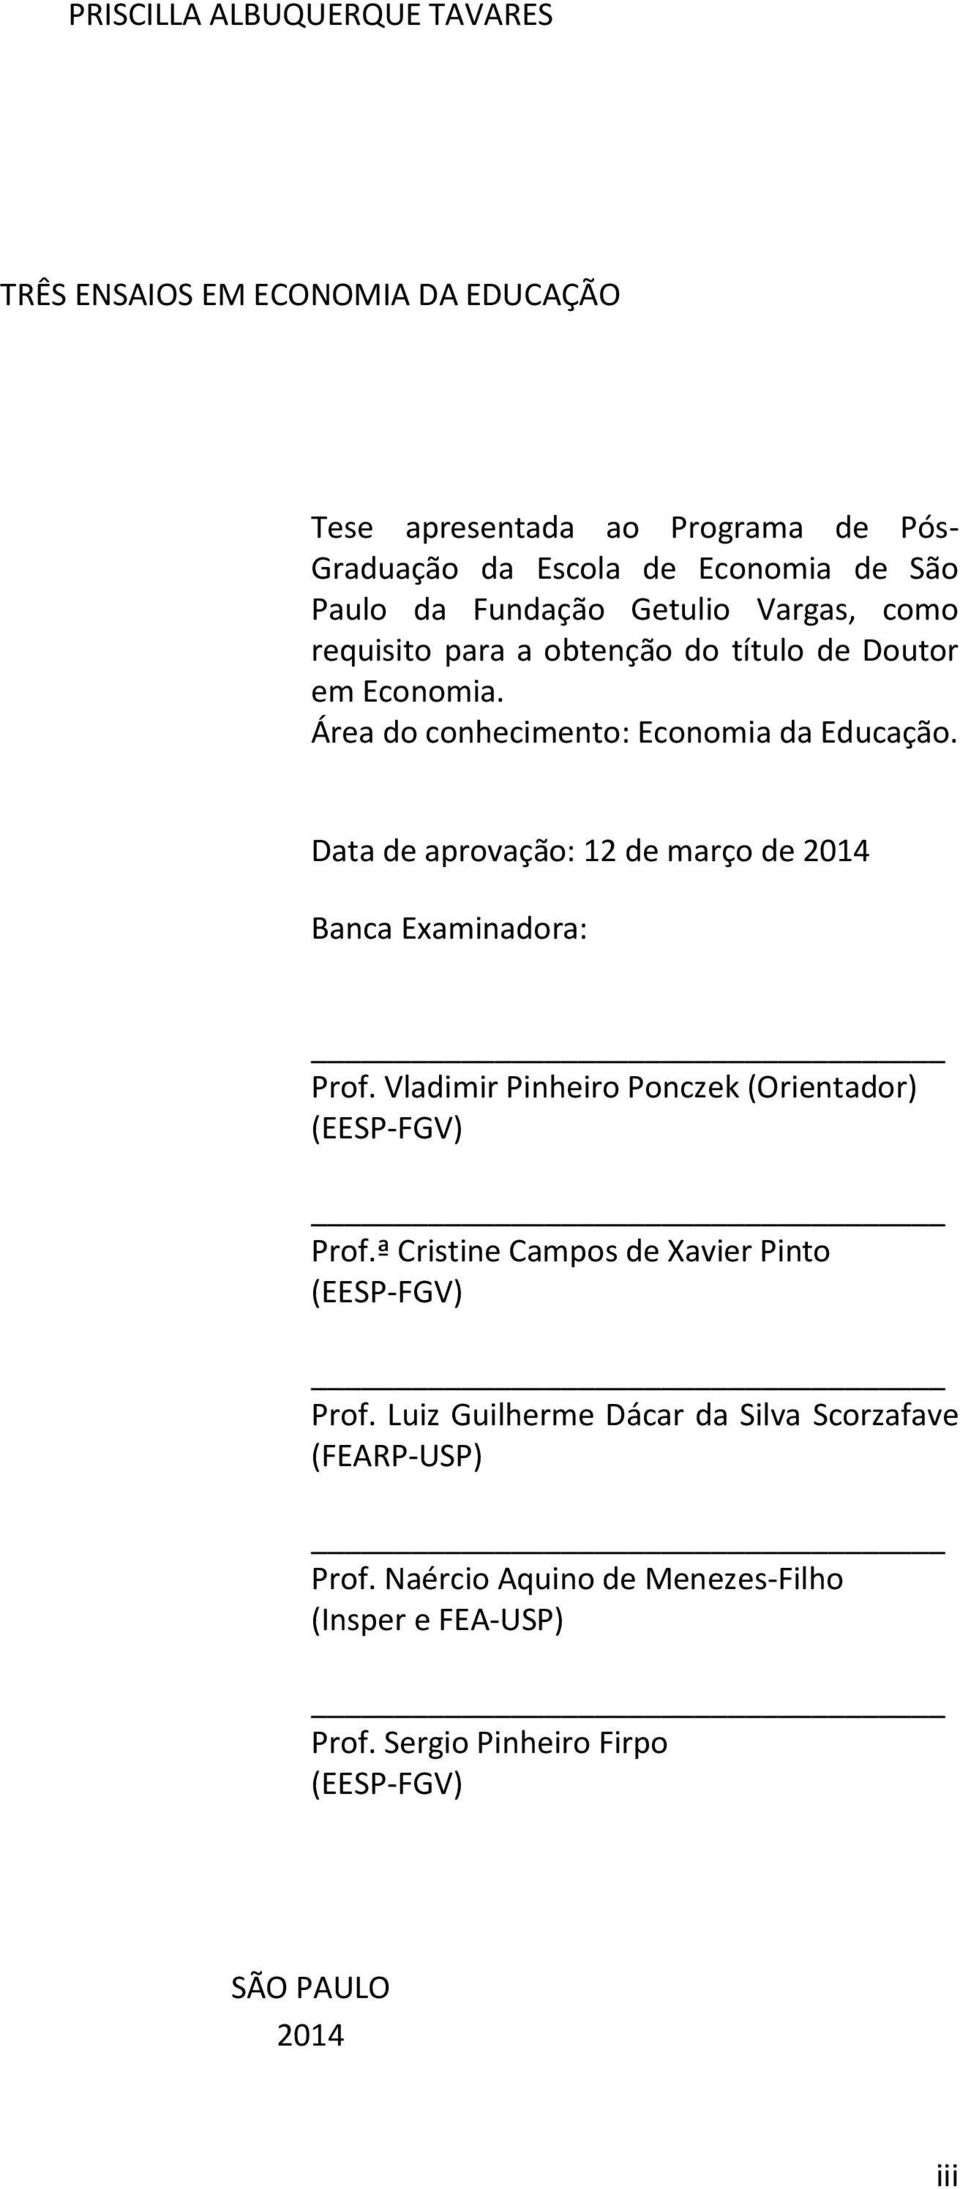 Data de aprovação: 12 de março de 2014 Banca Examinadora: Prof. Vladimir Pinheiro Ponczek (Orientador) (EESP-FGV) Prof.